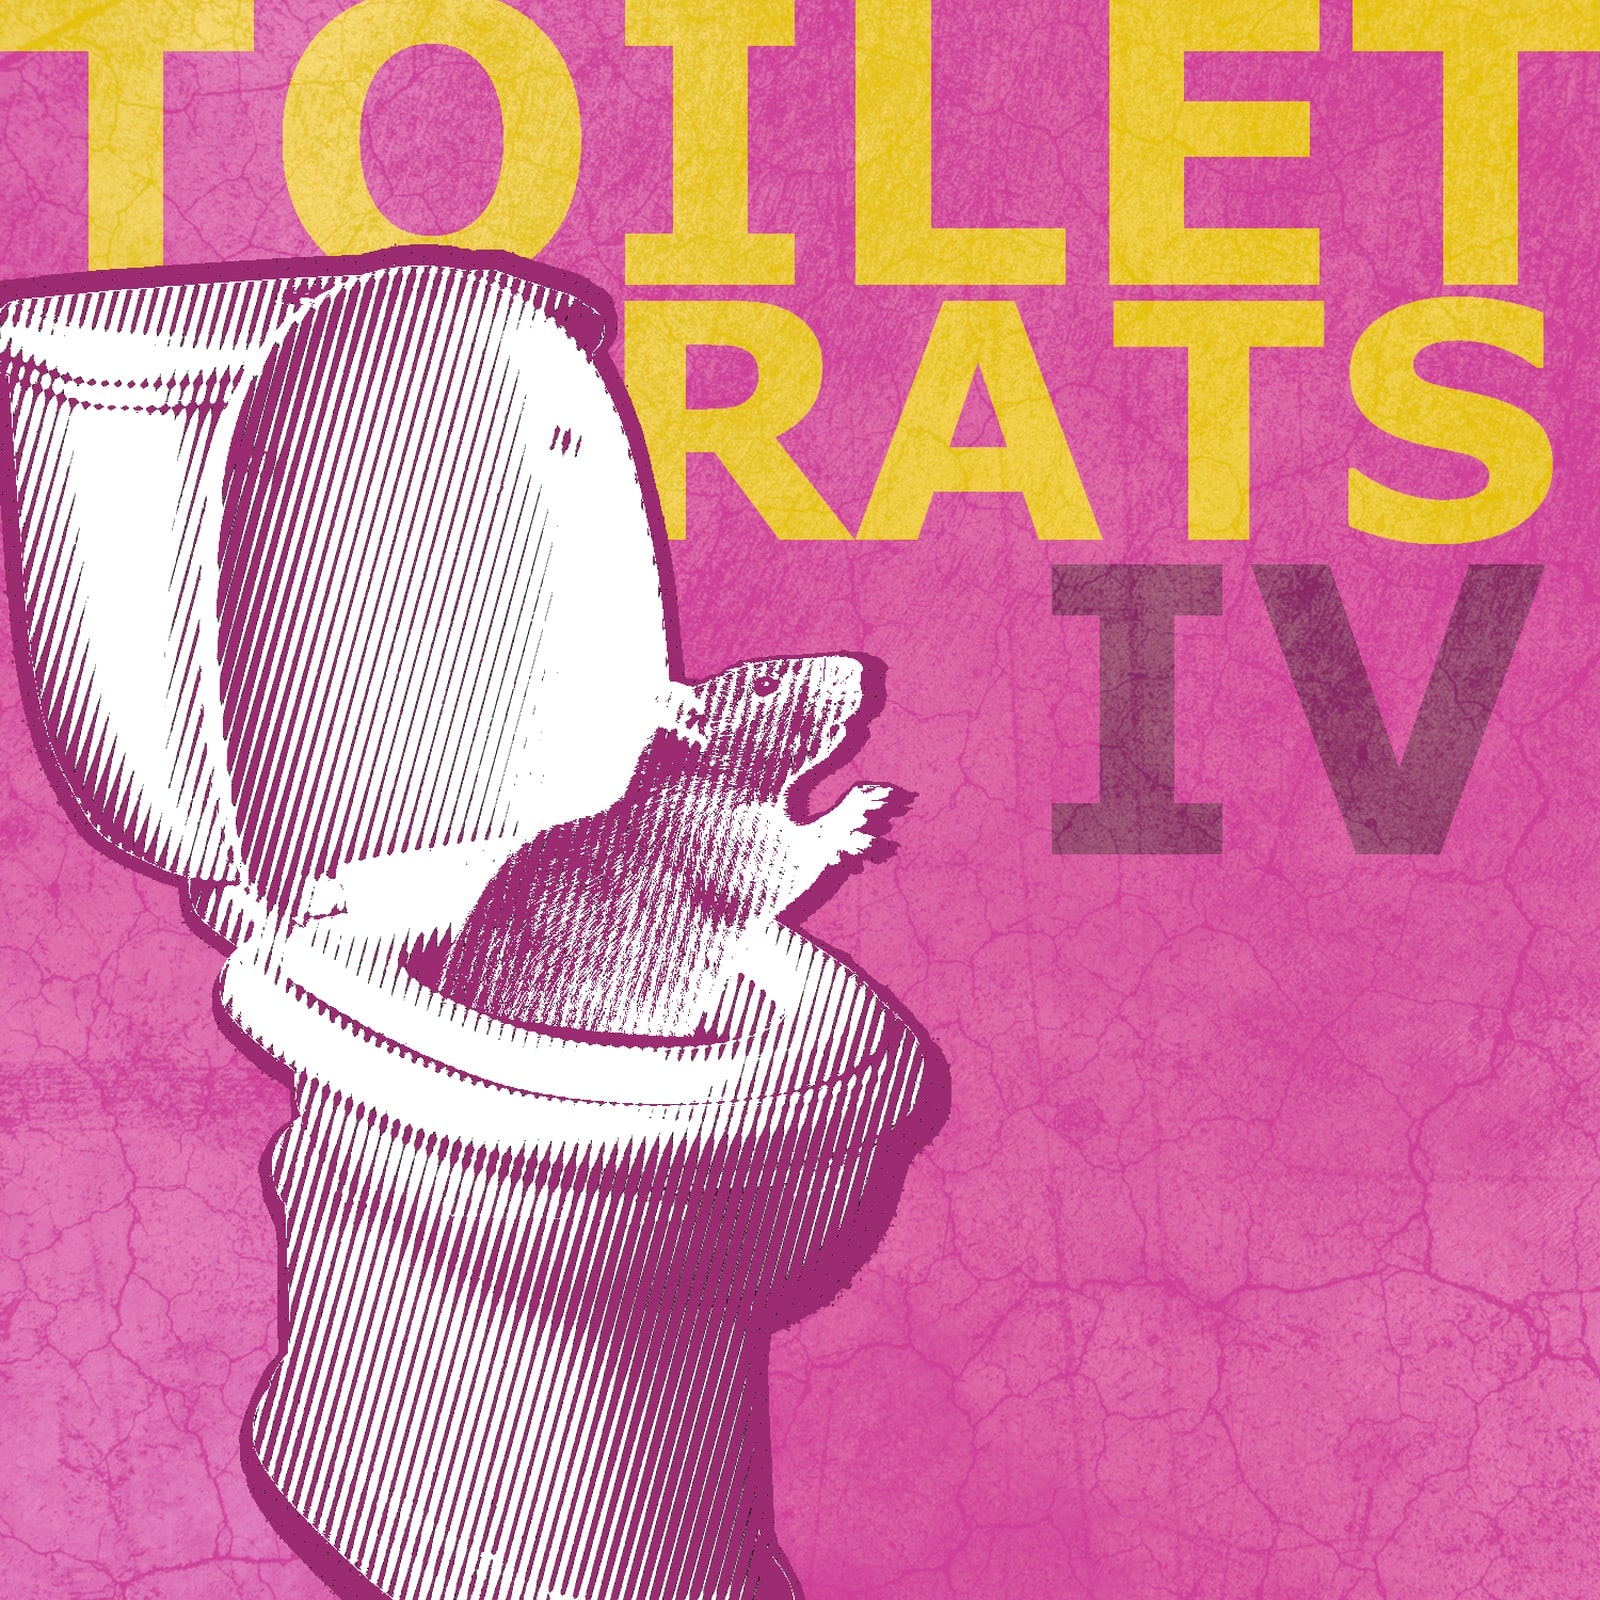 Toilet Rats